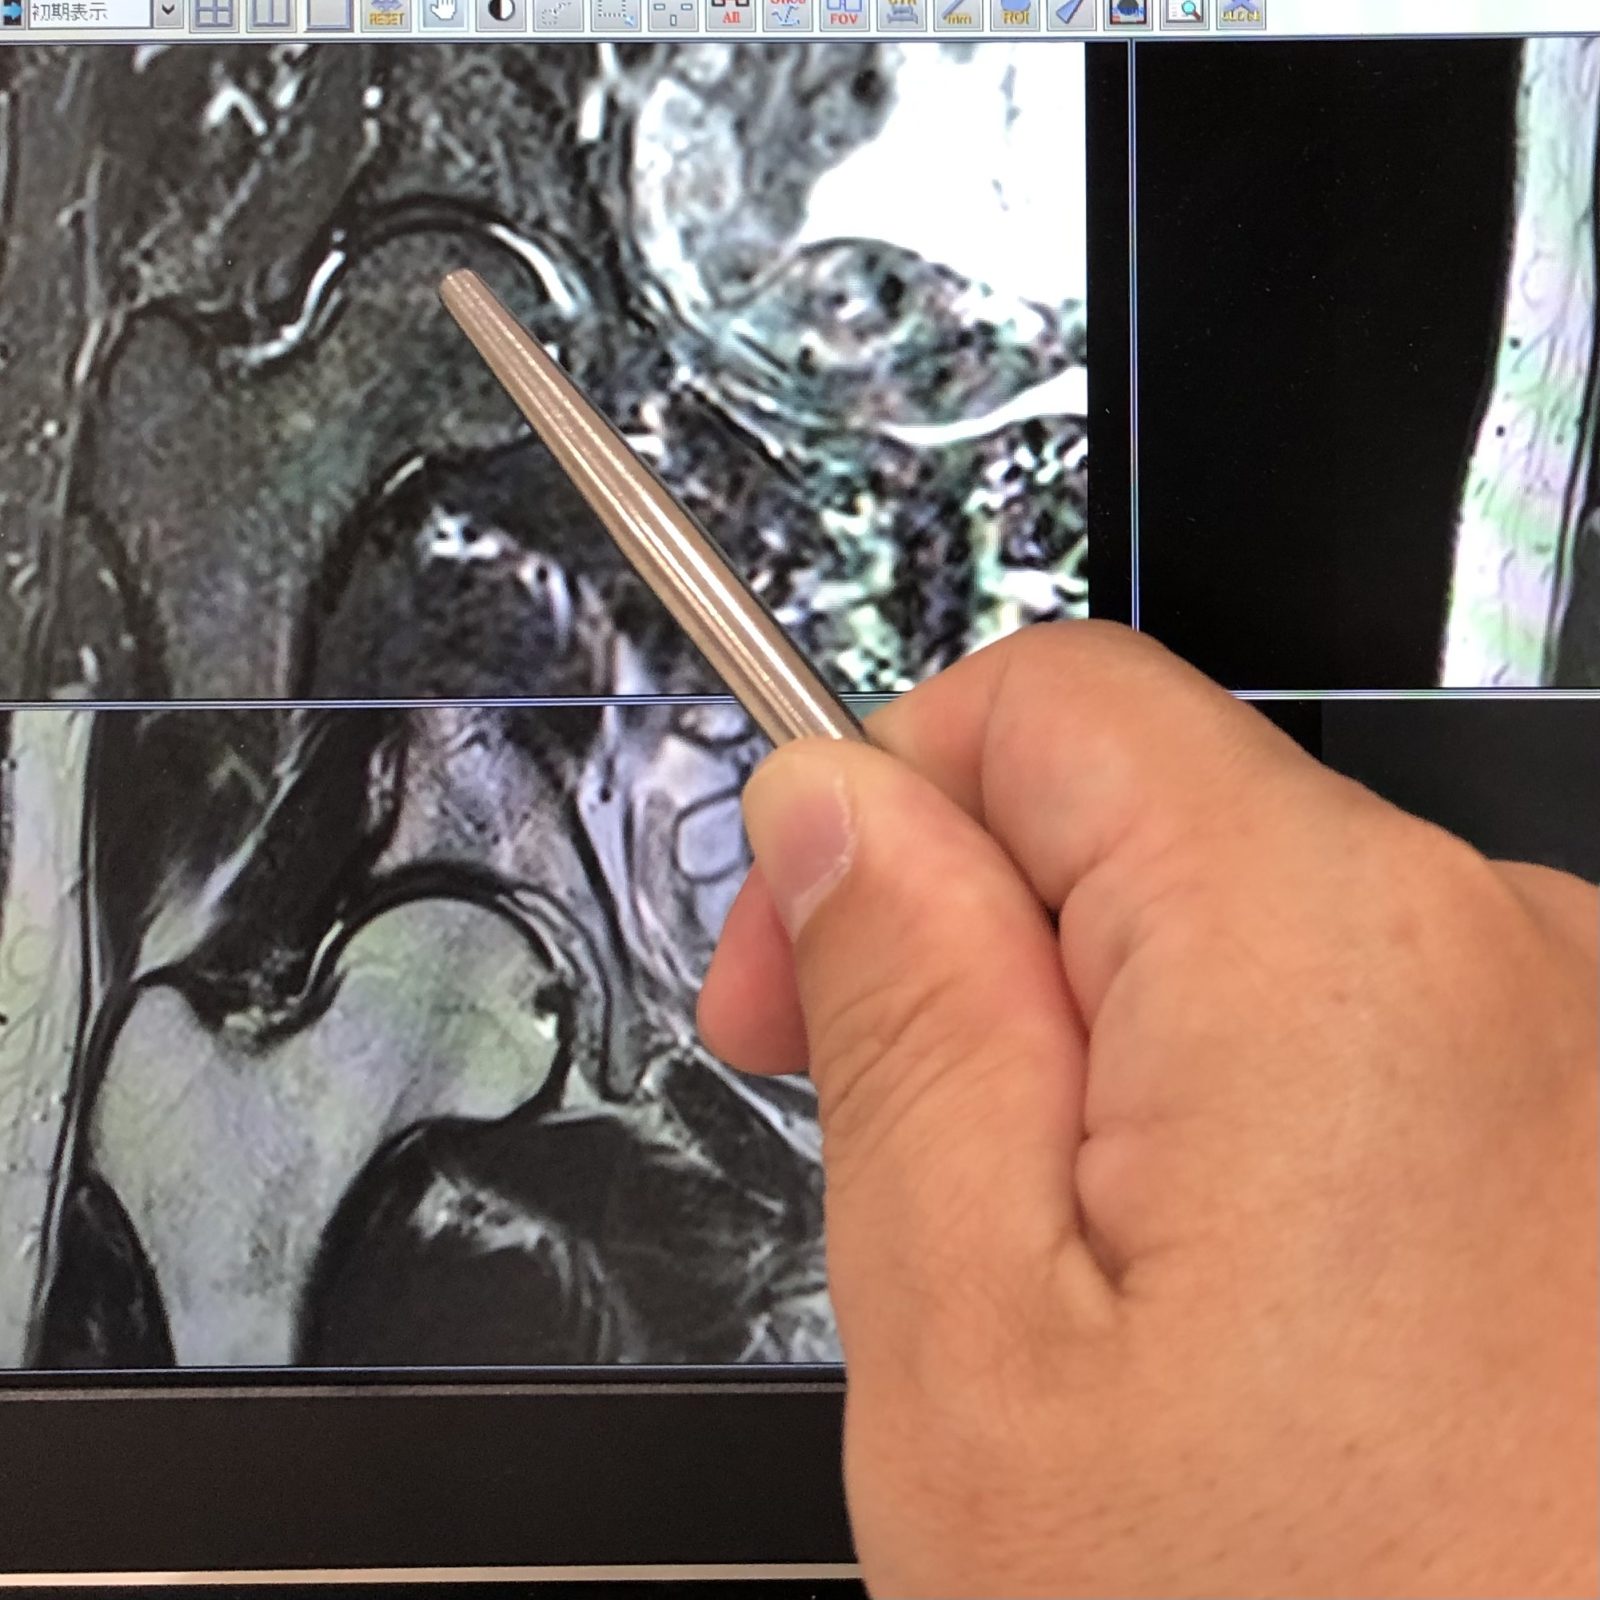 股関節のMRI検査の例